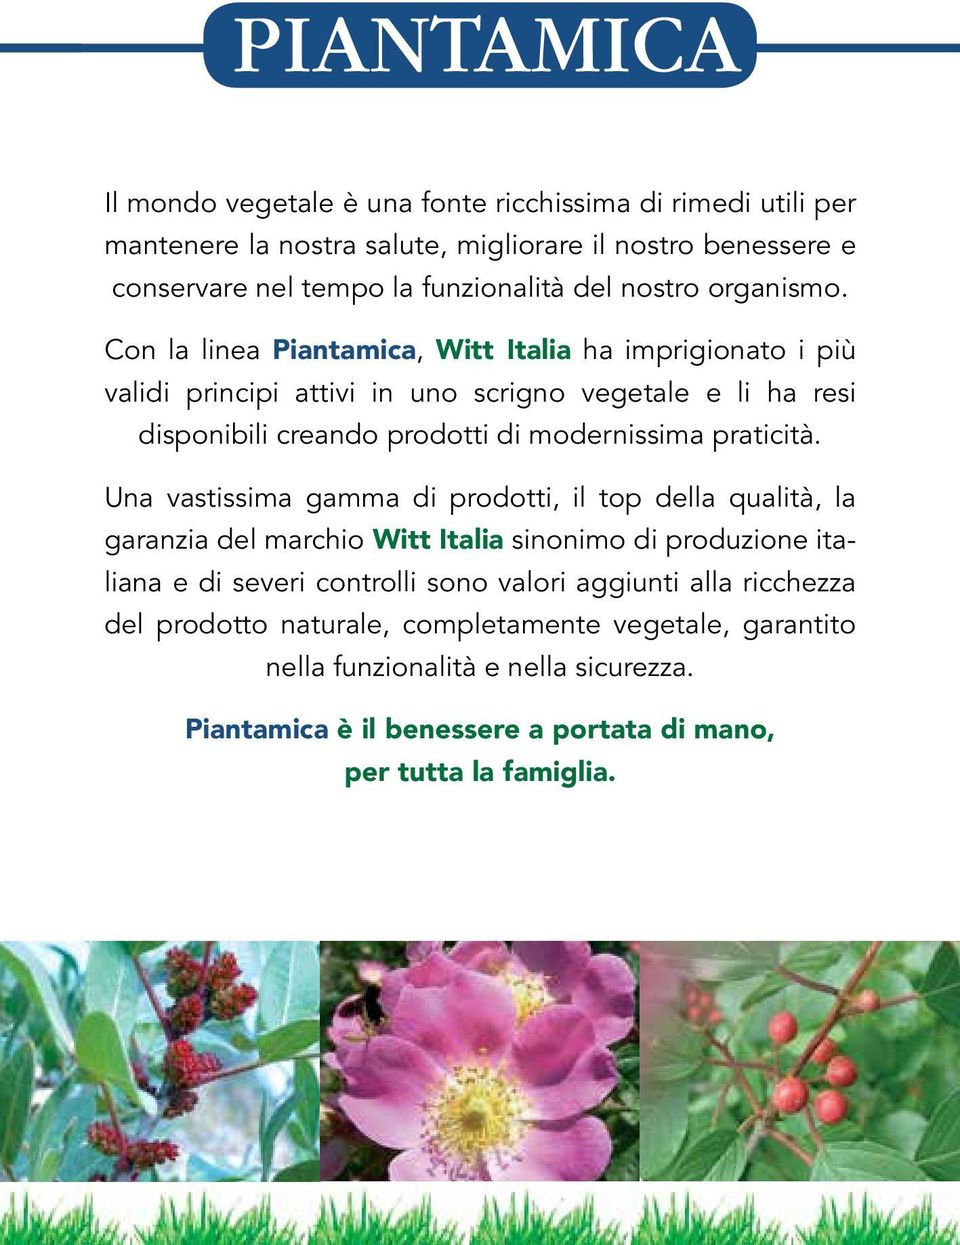 Con la linea Piantamica, Witt Italia ha imprigionato i più validi principi attivi in uno scrigno vegetale e li ha resi disponibili creando prodotti di modernissima praticità.